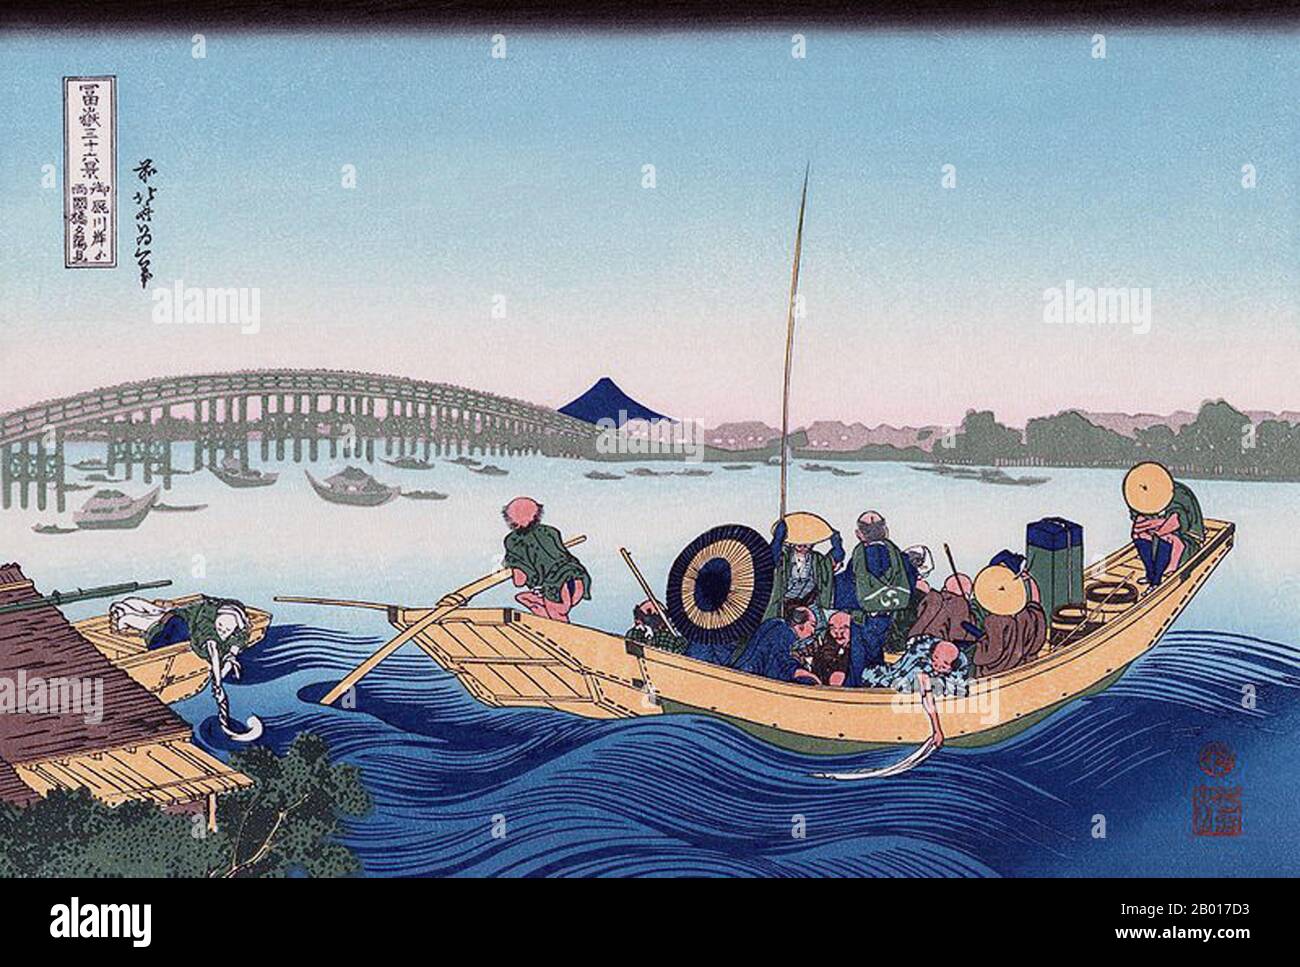 Japon: 'Traverser le pont Ryogoku depuis la rive du fleuve Sumida à Onmayagashi'.Imprimé Ukiyo-e en blocs de bois de la série «trente-six vues du Mont Fuji» de Katsushika Hokusai (31 octobre 1760 - 10 mai 1849), 1830.«trente-six vues du Mont Fuji» est une série «ukiyo-e» de gravures sur bois de l’artiste japonais Katsushika Hokusai.La série représente le Mont Fuji dans différentes saisons et conditions météorologiques à partir de divers endroits et distances.Il se compose en fait de 46 tirages créés entre 1826 et 1833.Les 36 premiers ont été inclus dans la publication originale et 10 autres ont été ajoutés. Banque D'Images